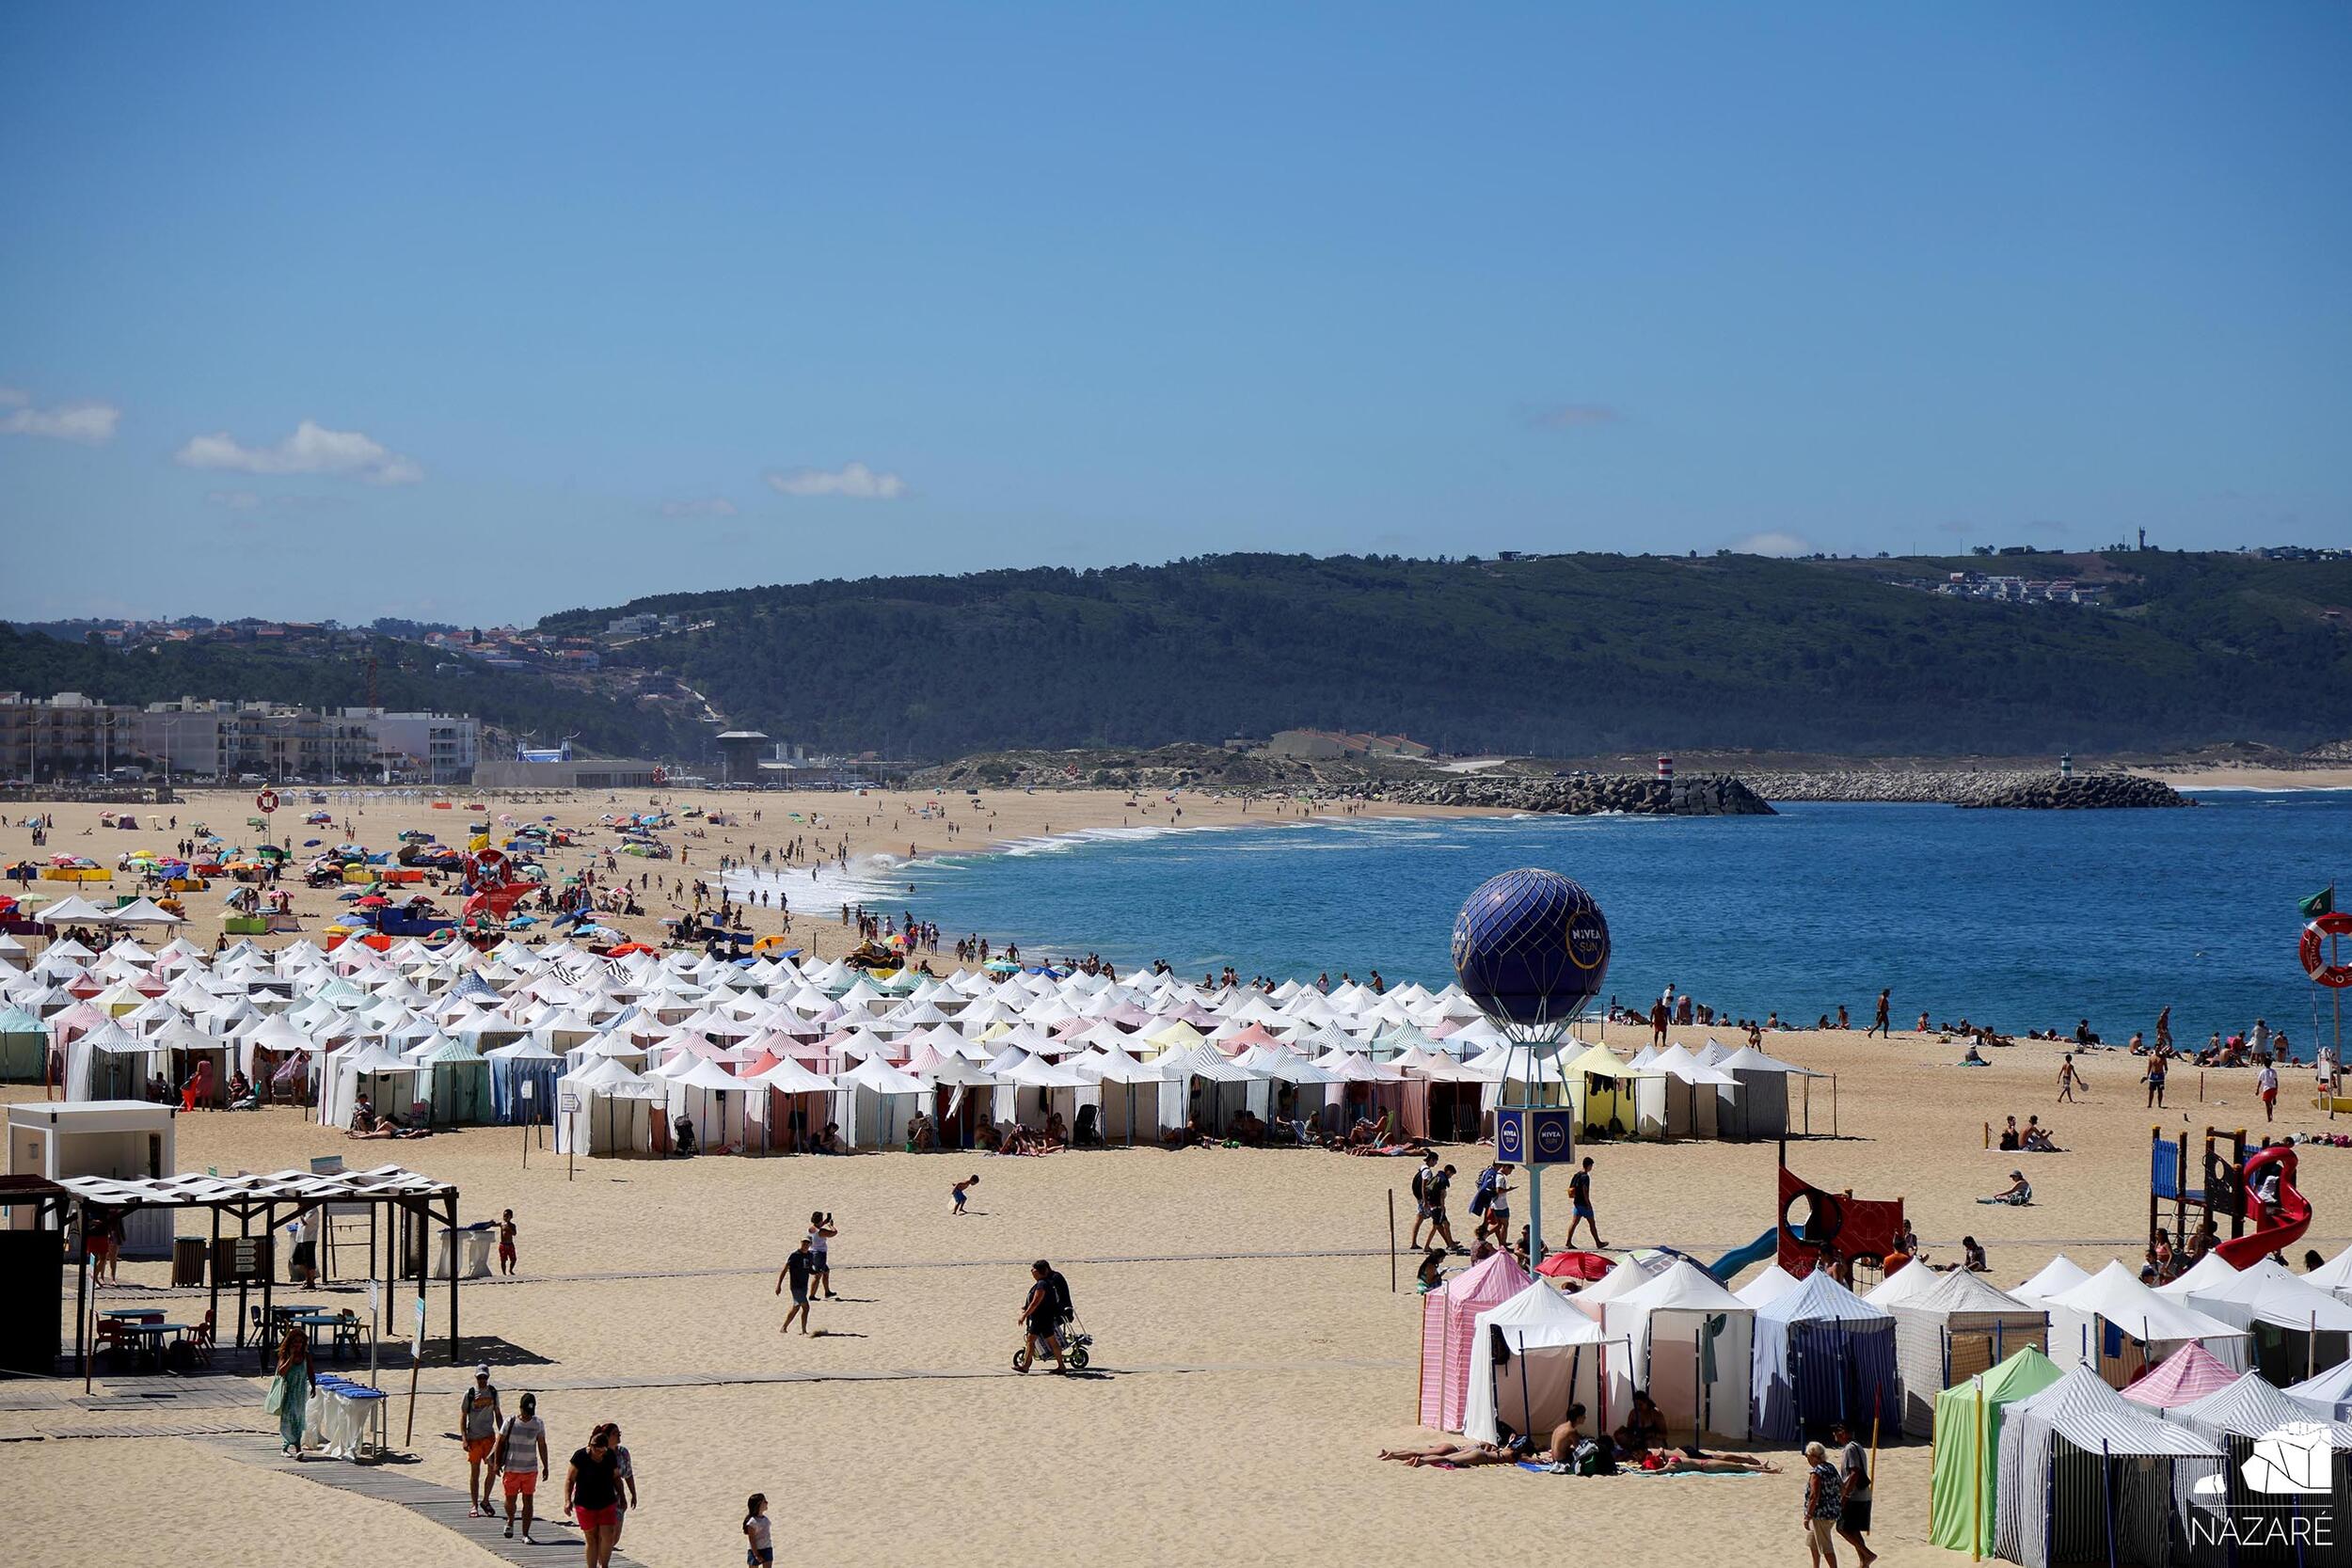 Abriram os Concursos Públicos para uso privativo de ocupação temporária da Praia da Nazaré